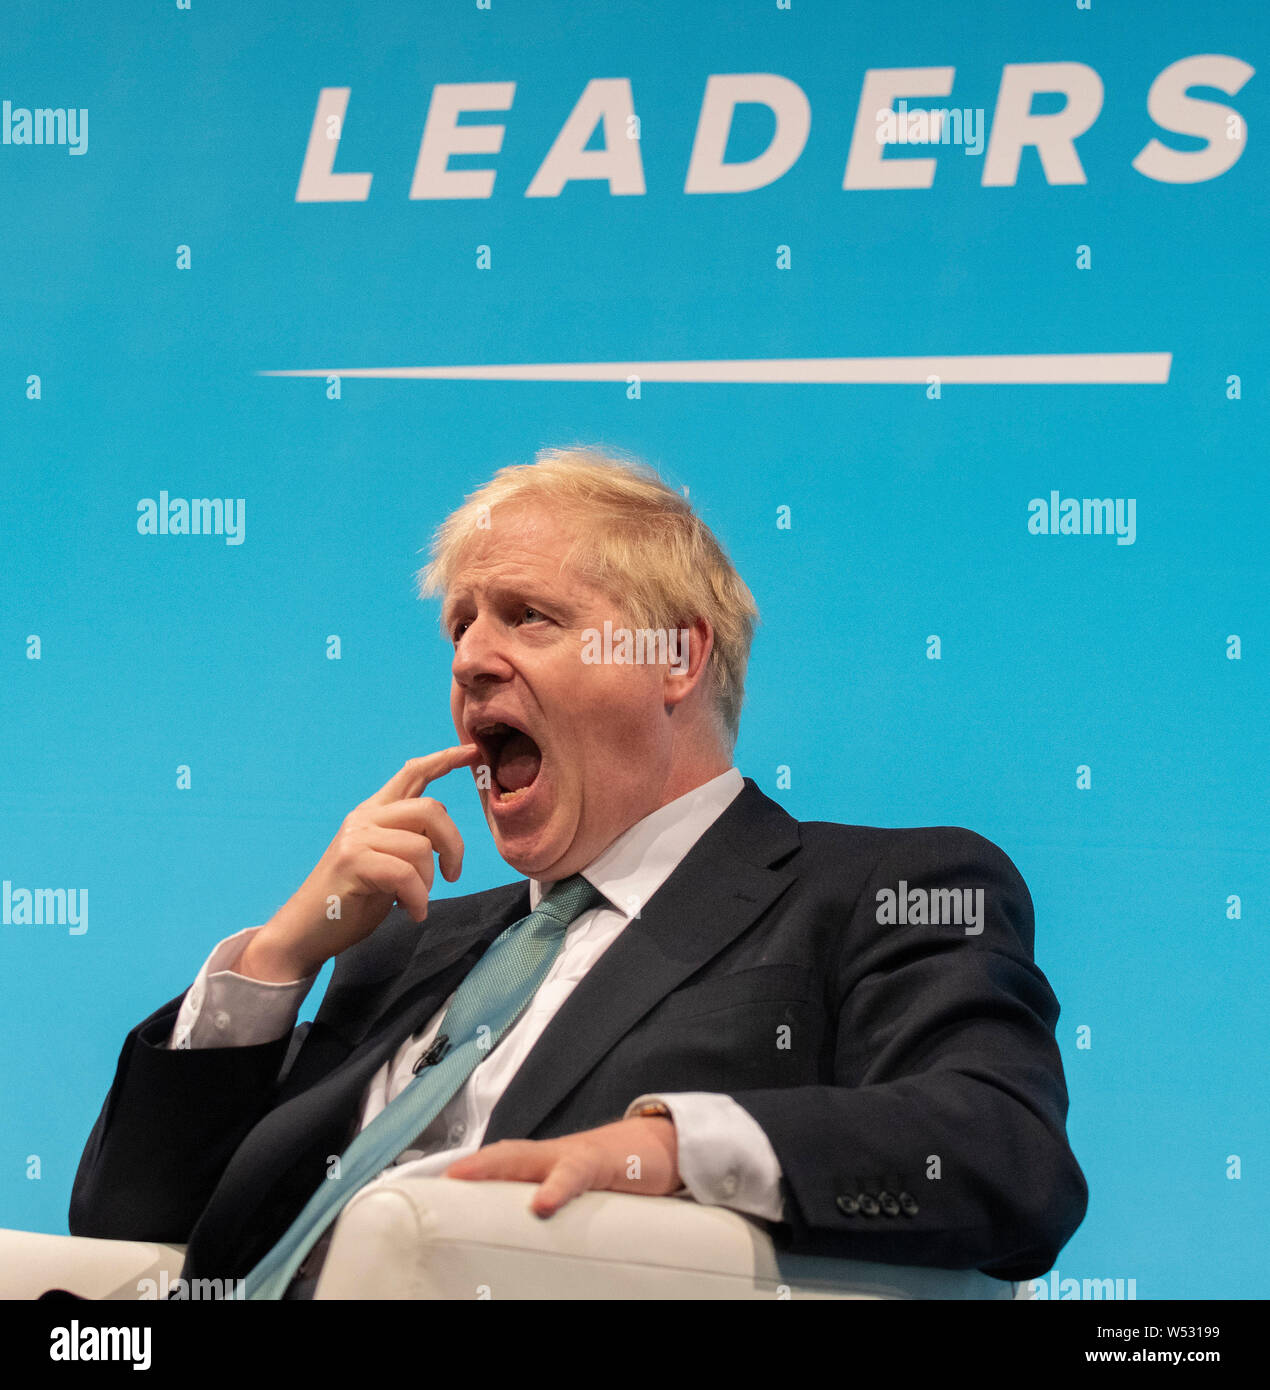 Konservativen Spitzenkandidaten Boris Johnson kommt, bevor man mit einem Publikum von der Partei, als er in eine konservative Partei Führung hustings Ereignis am York Barbican am 04. Juli 2019 in York, England Stockfoto